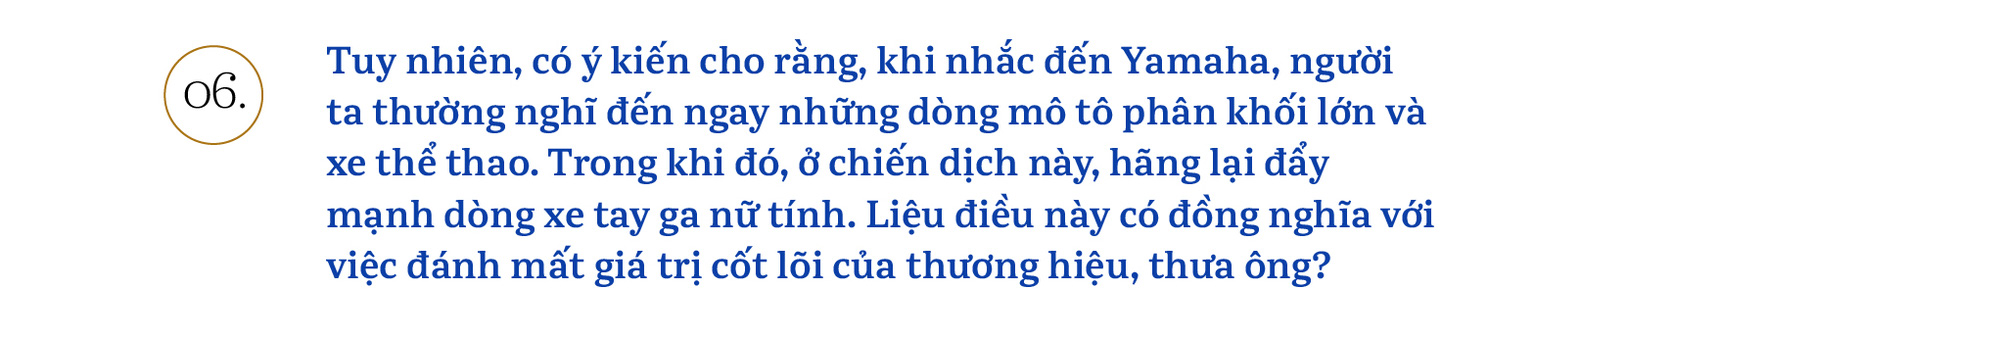 Chủ tịch Yamaha Việt Nam: ‘Chúng tôi sẽ khơi dậy khách hàng trẻ tìm được bản ngã của chính mình’ - Ảnh 12.